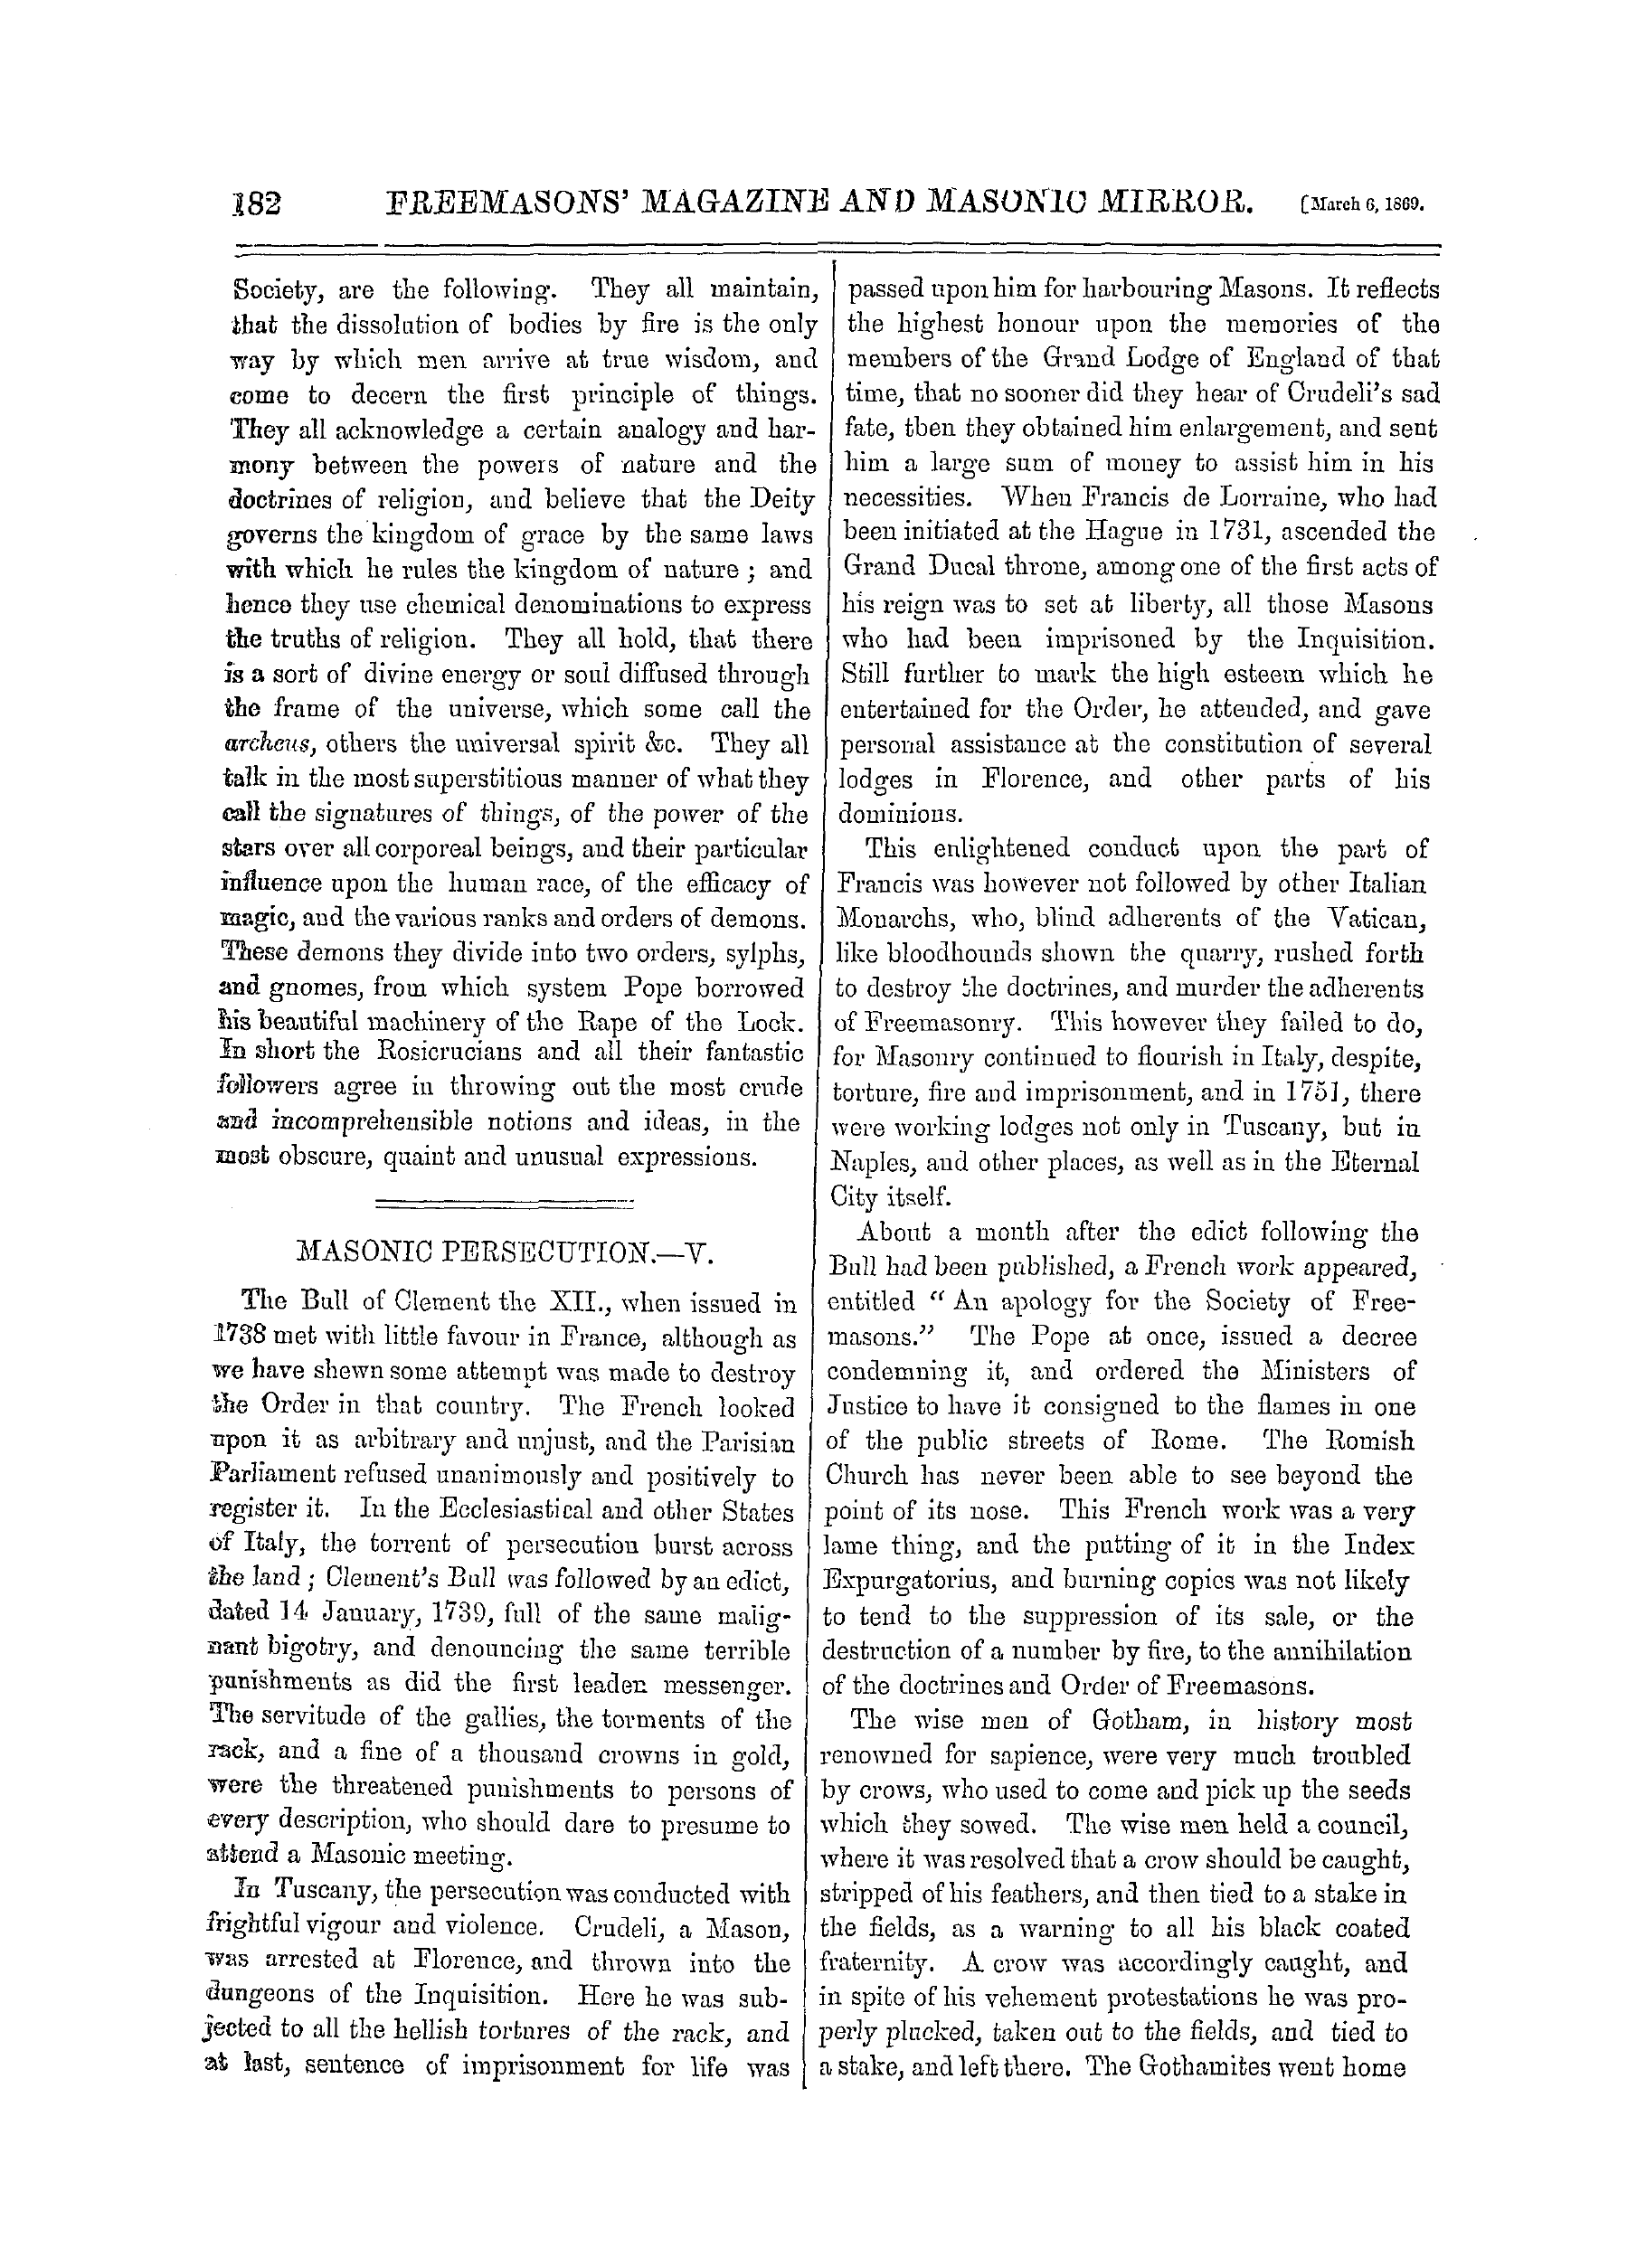 The Freemasons' Monthly Magazine: 1869-03-06: 2